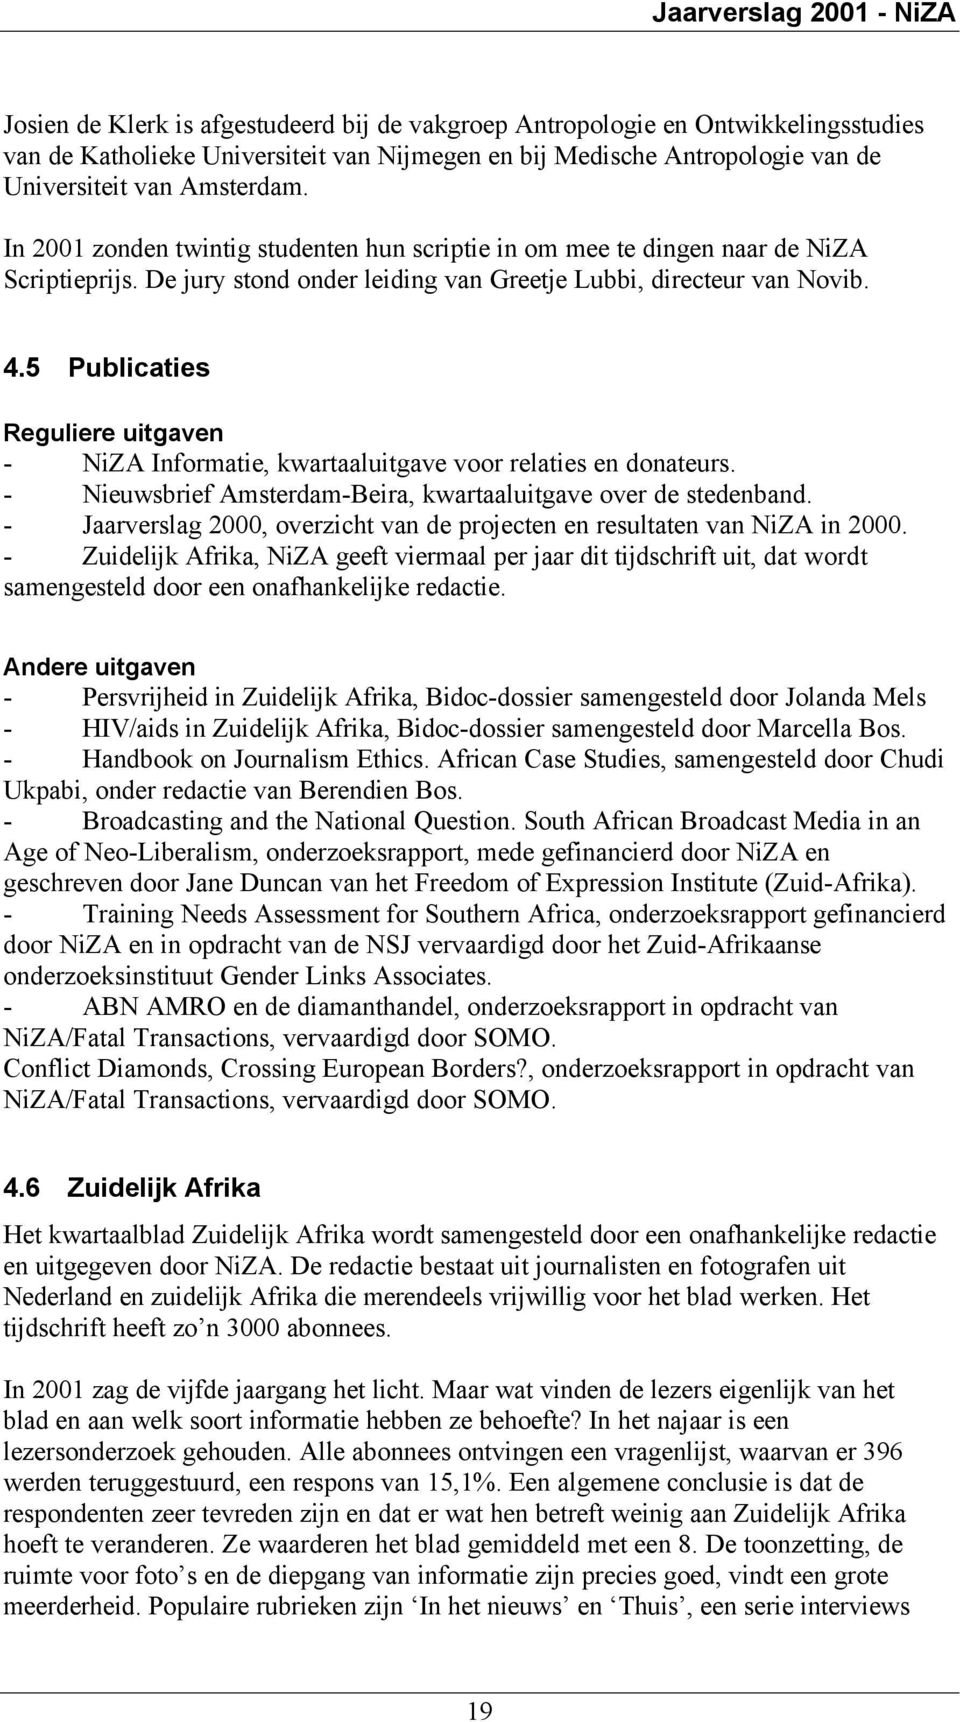 5 Publicaties Reguliere uitgaven - NiZA Informatie, kwartaaluitgave voor relaties en donateurs. - Nieuwsbrief Amsterdam-Beira, kwartaaluitgave over de stedenband.